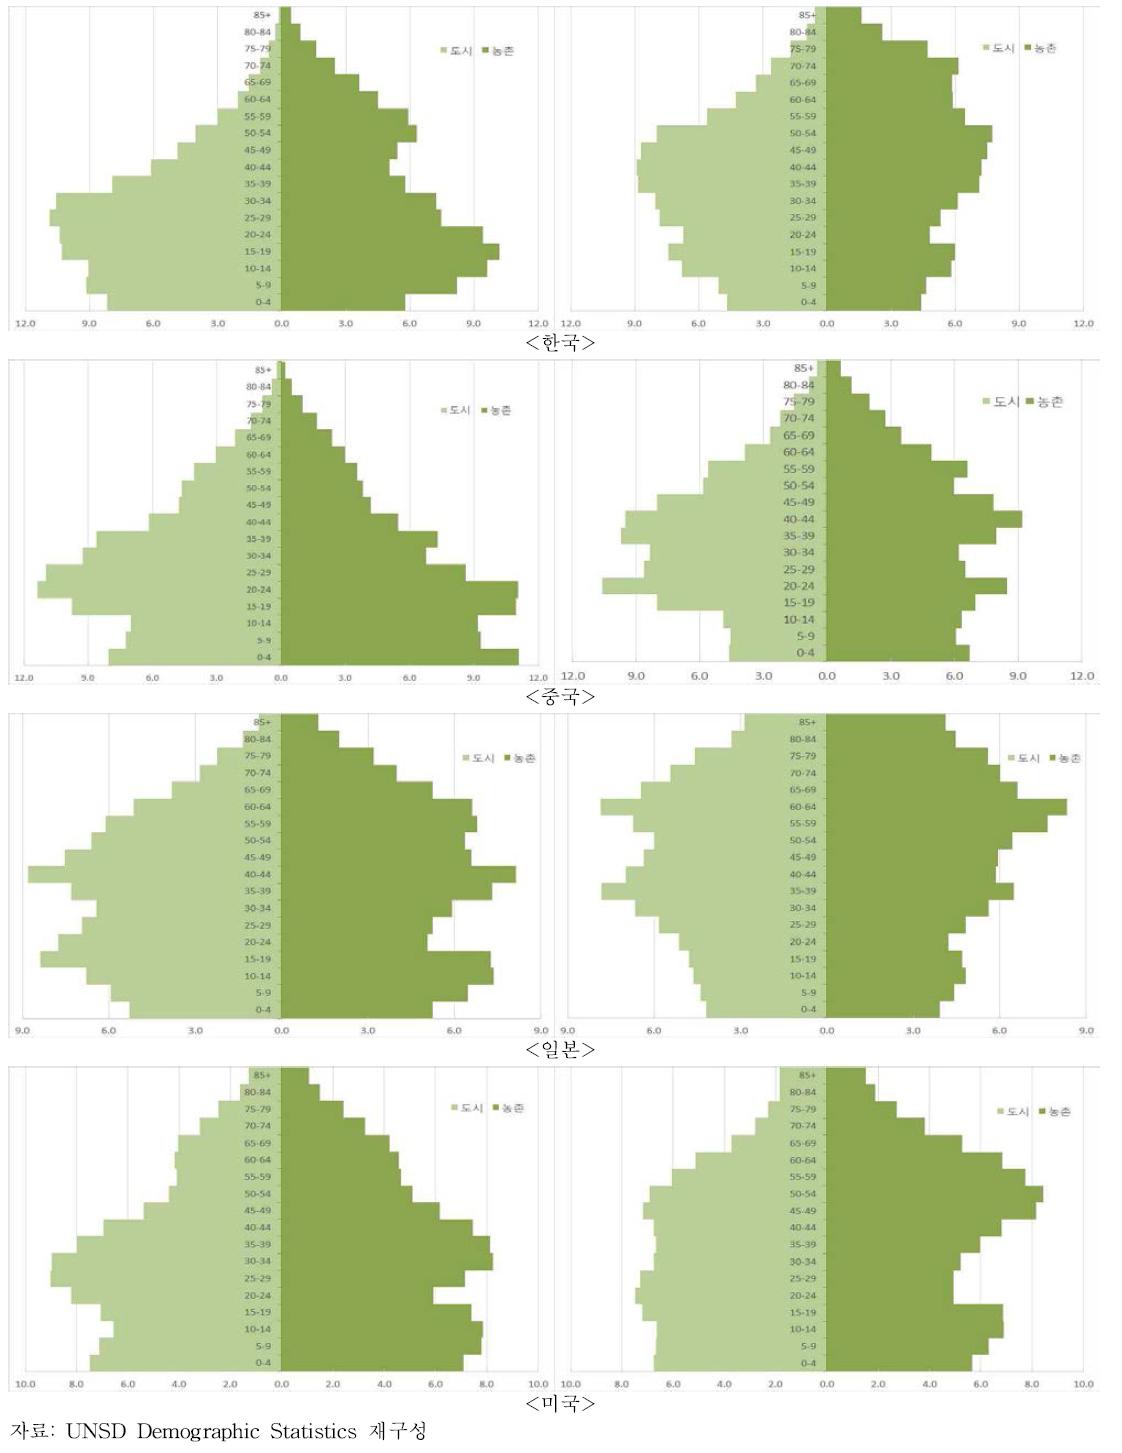 국가별연령별 인구 비중 피라미드(1990, 2010): 도시 vs. 농촌